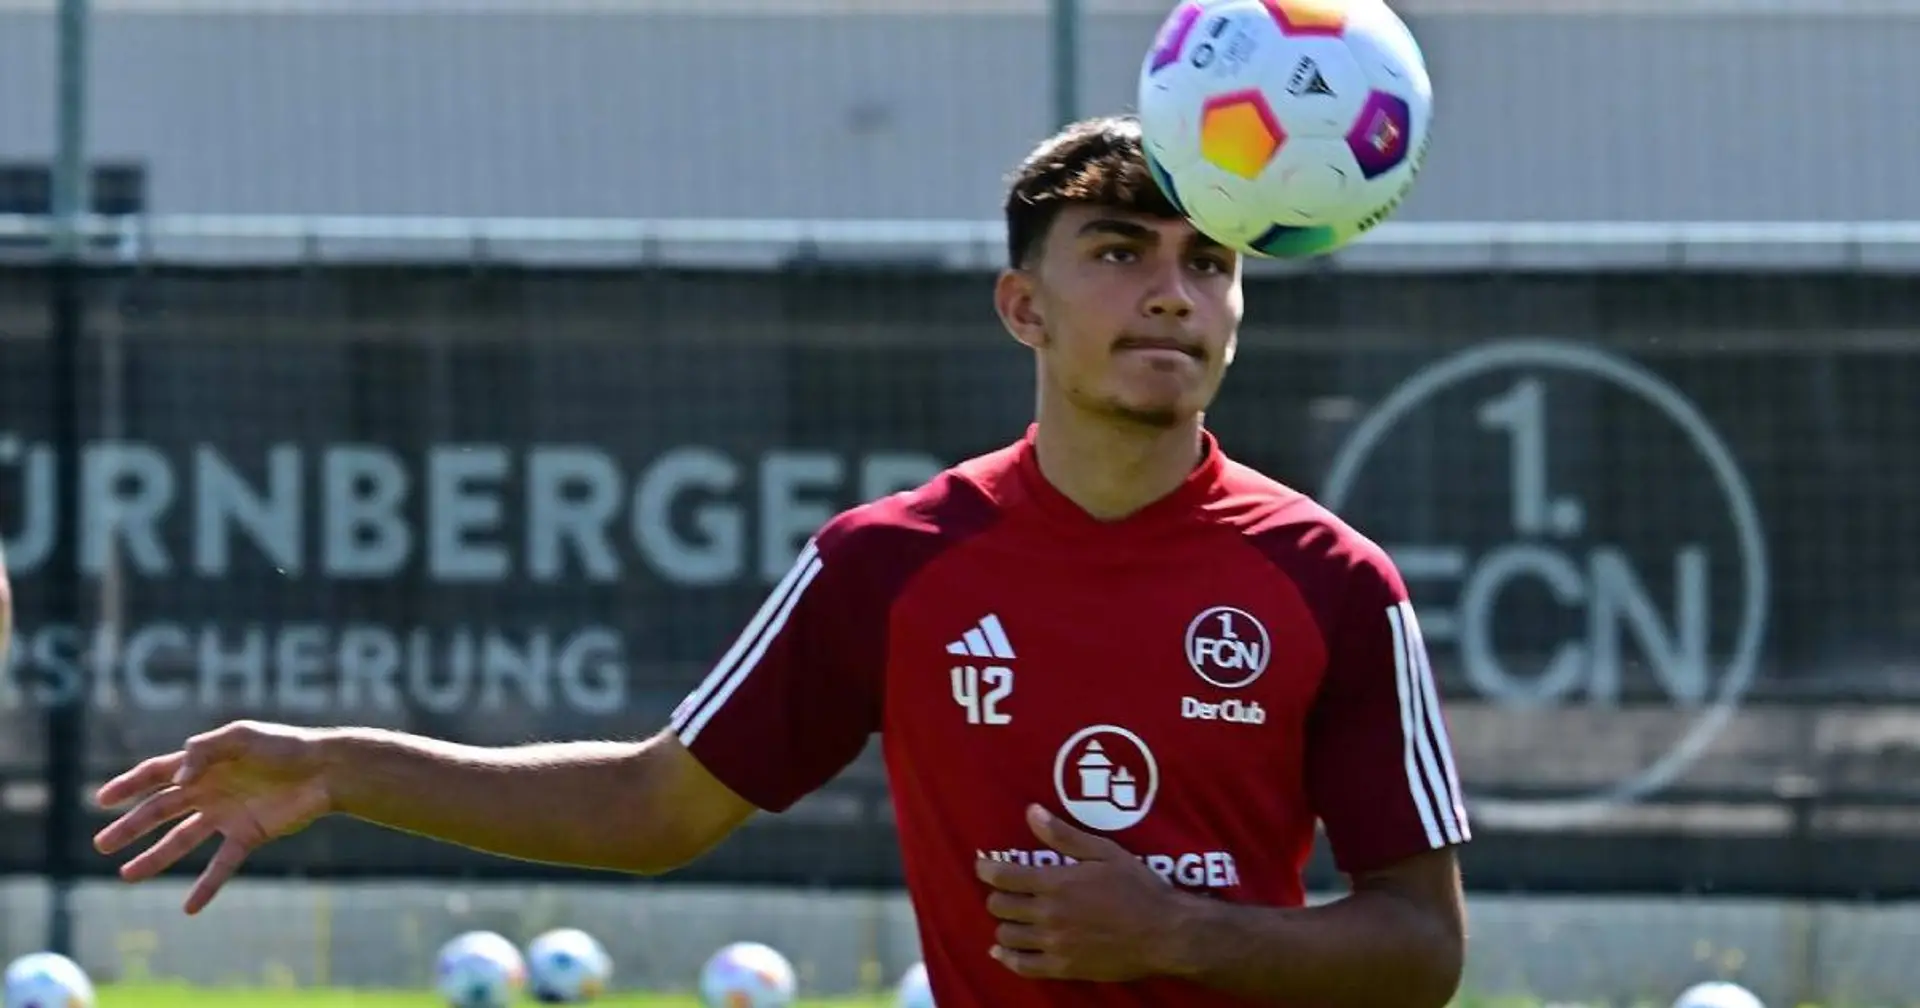 Der neue Verein von Can Uzun steht fest, es handelt sich nicht um FC Bayern - Bericht